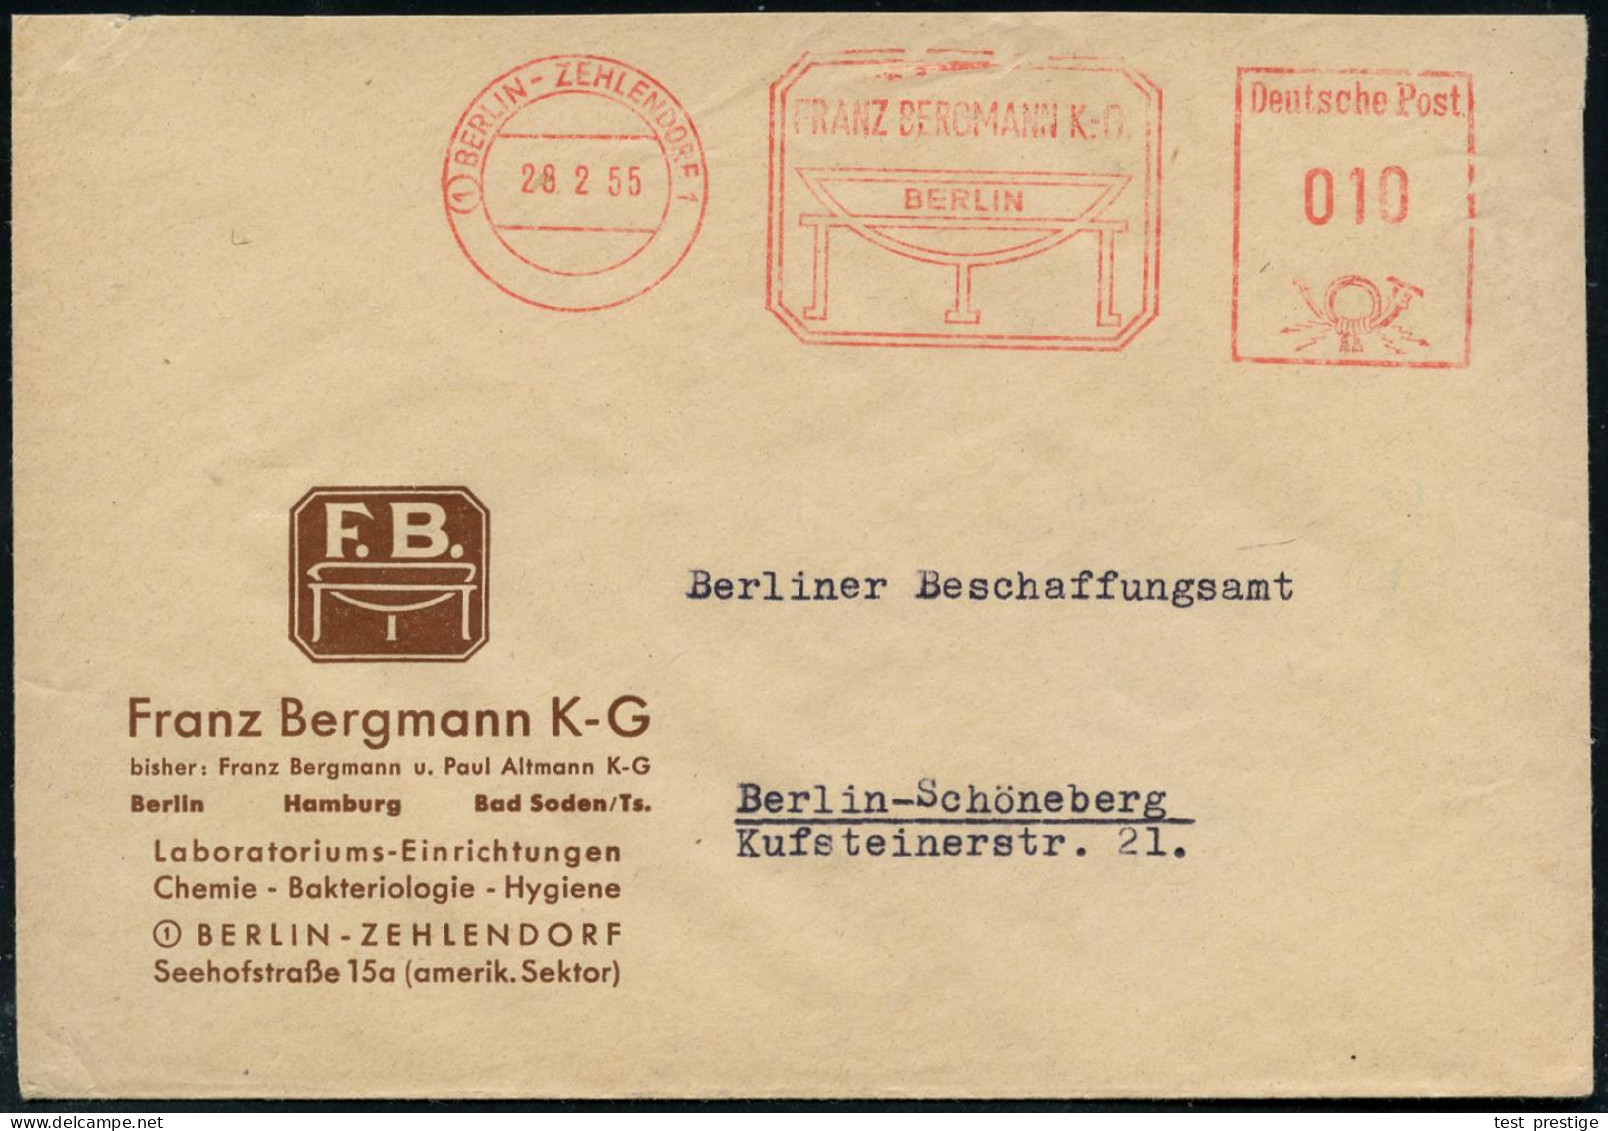 (1) BERLIN-ZEHLENDORF 1/ FRANZ BERGMANN KG. 1953 (12.11.) AFS (Schalen-Logo) Motivgl. Firmen-Bf.: Labora-toriums-Einrich - Medicine